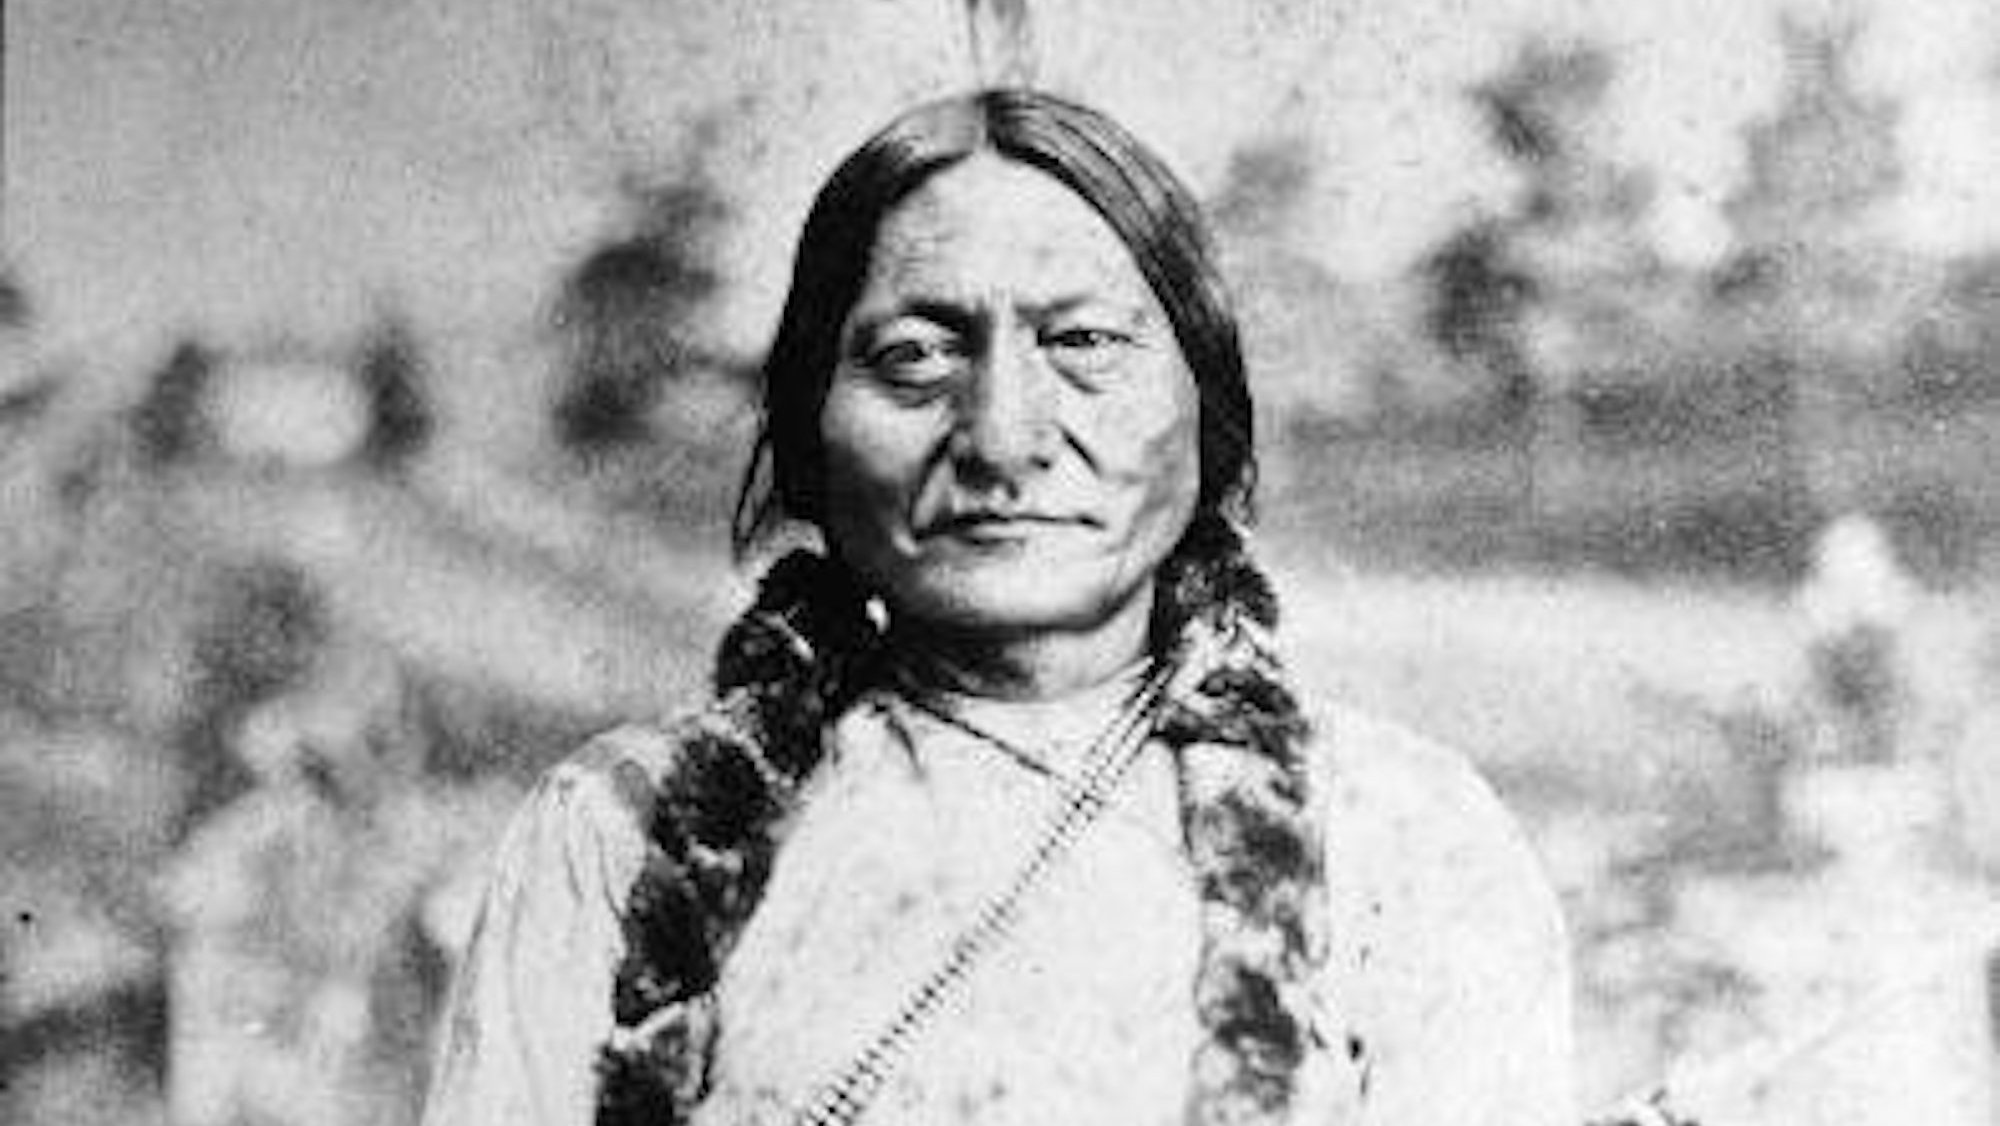 Touro Sentado foi um famoso líder indígena da América do Norte no século XIX